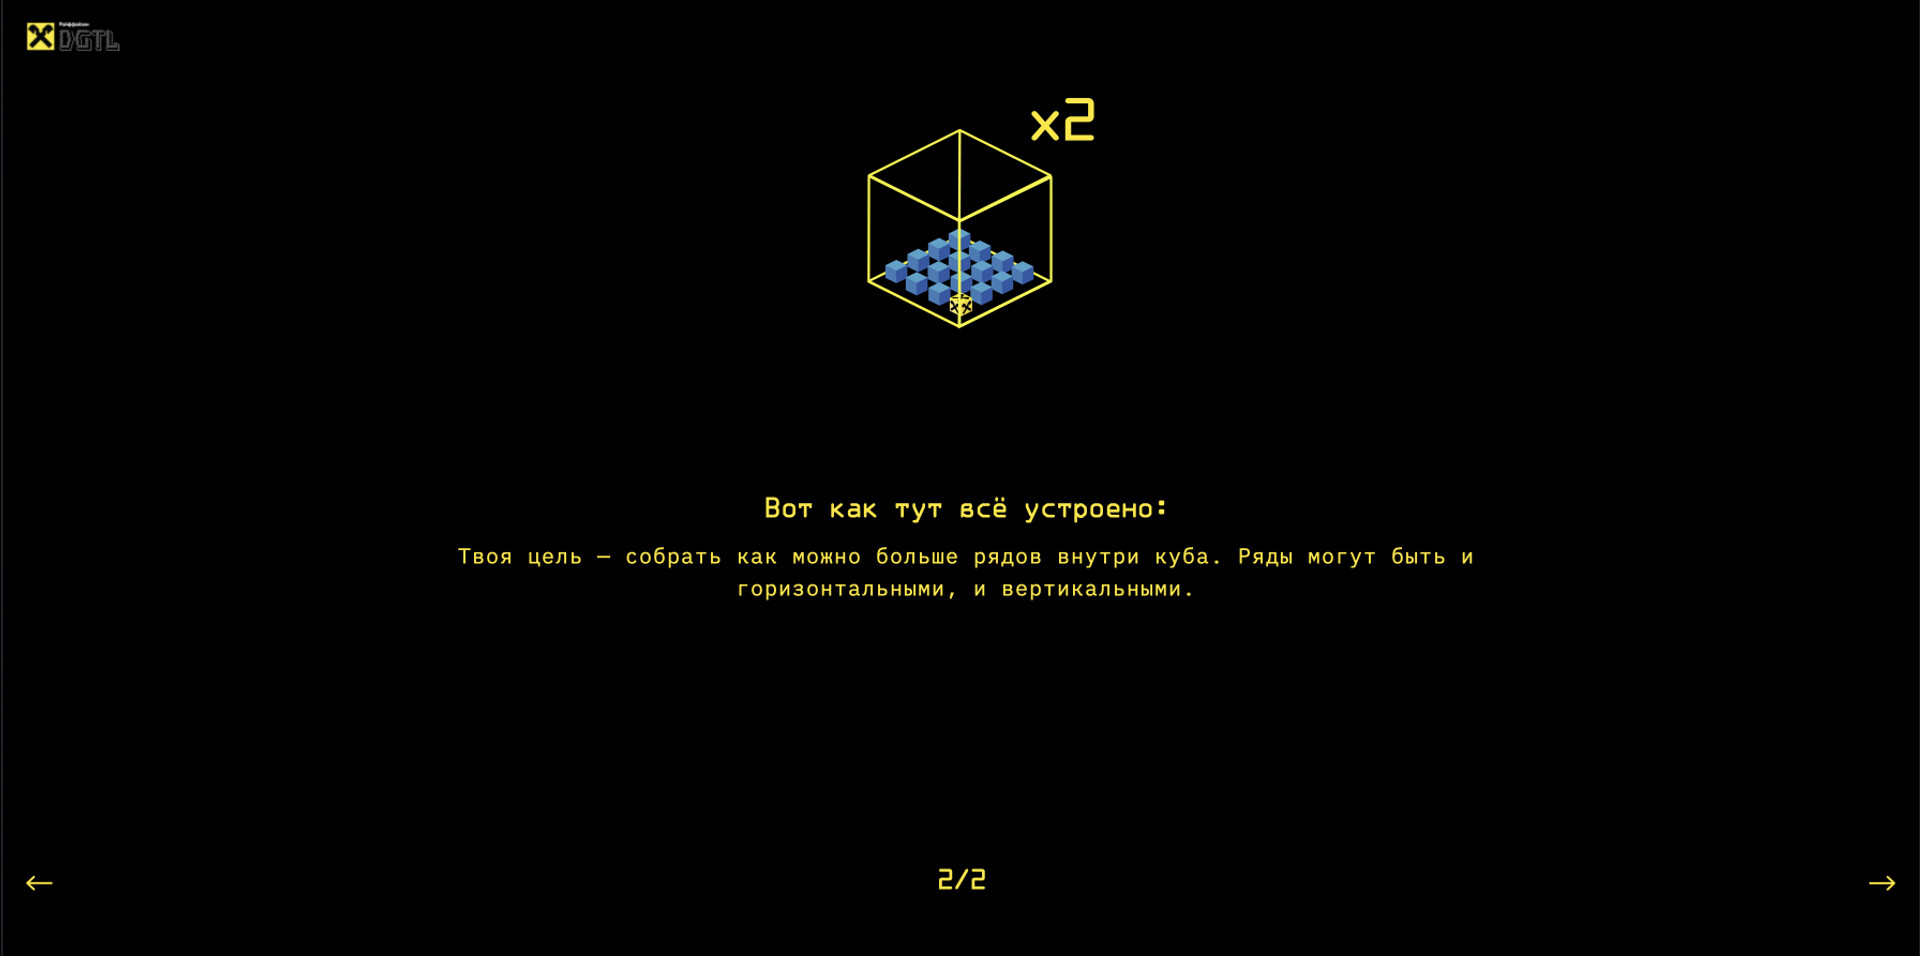 A Tetris-inspired AR game for Raiffeisenbank